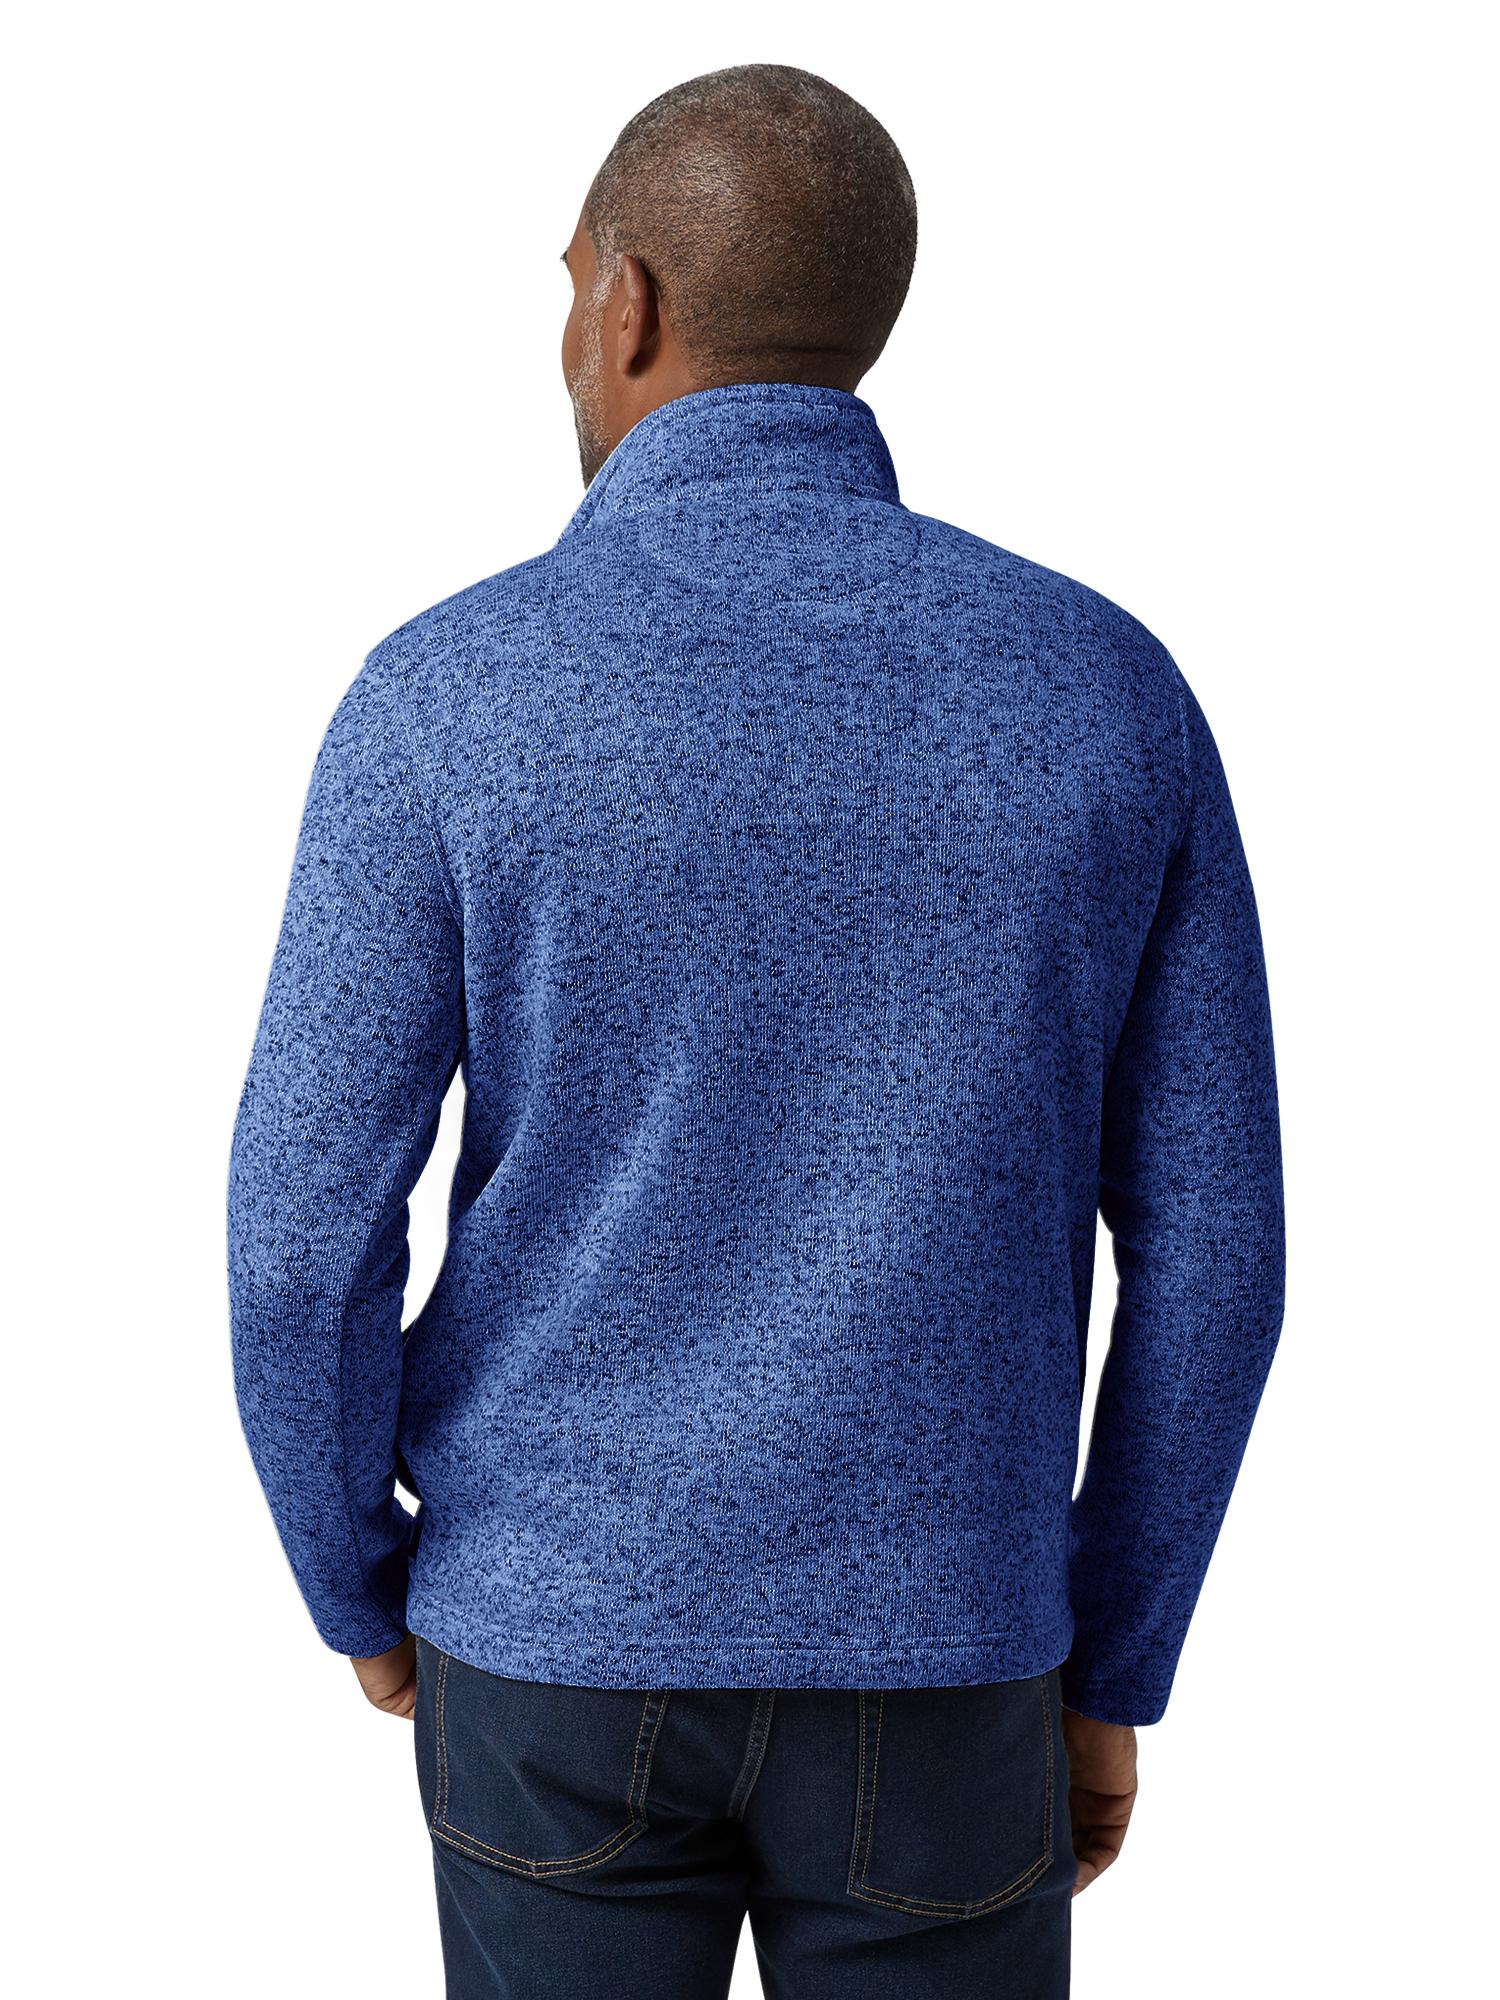 Chaps Men's & Big Men's Quarter Zip Mock Neck Sweater Fleece - Walmart.com